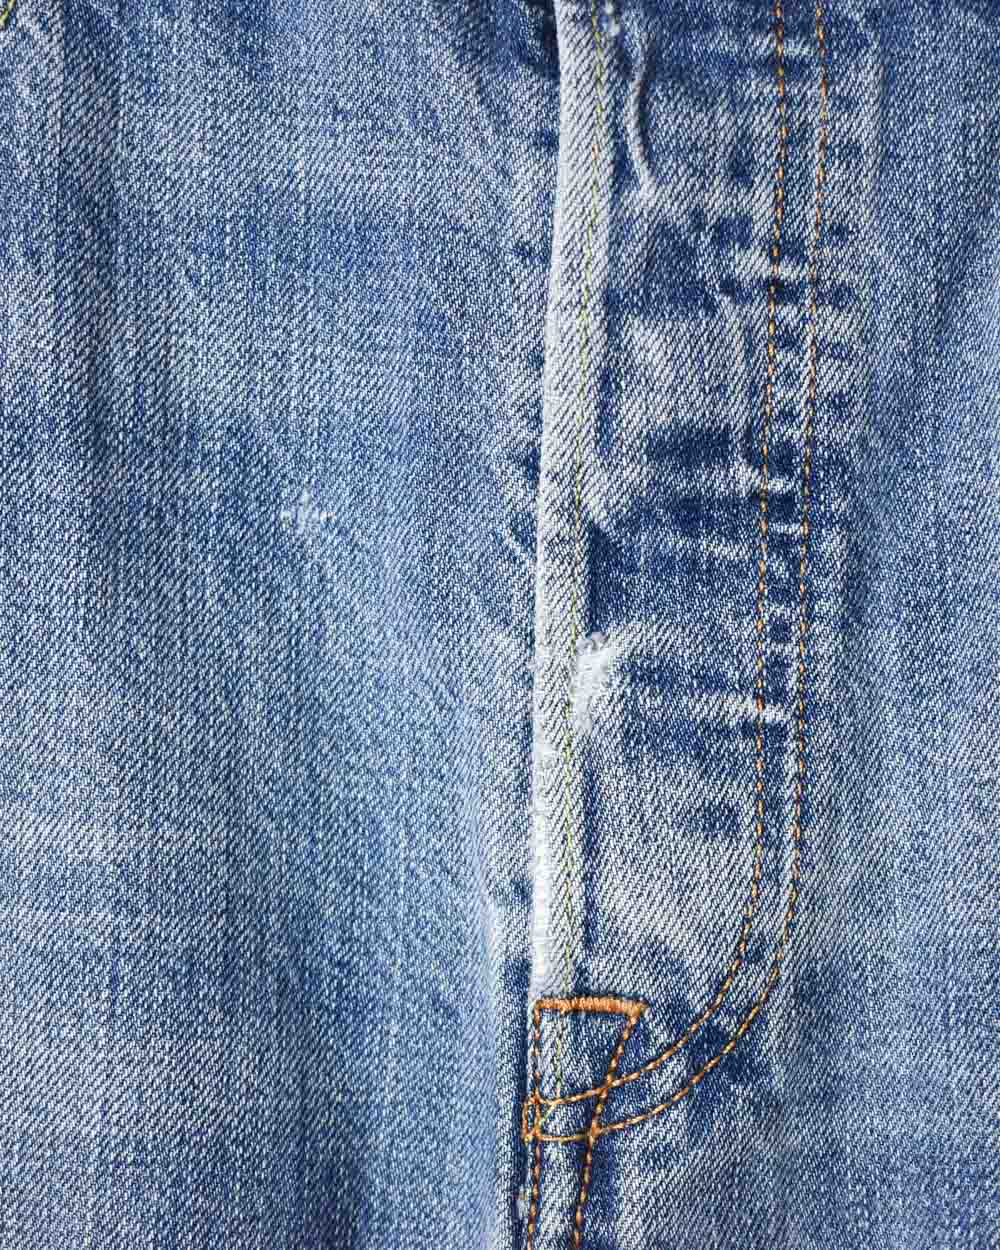 Blue Levi's 501 Jeans - W33 L33